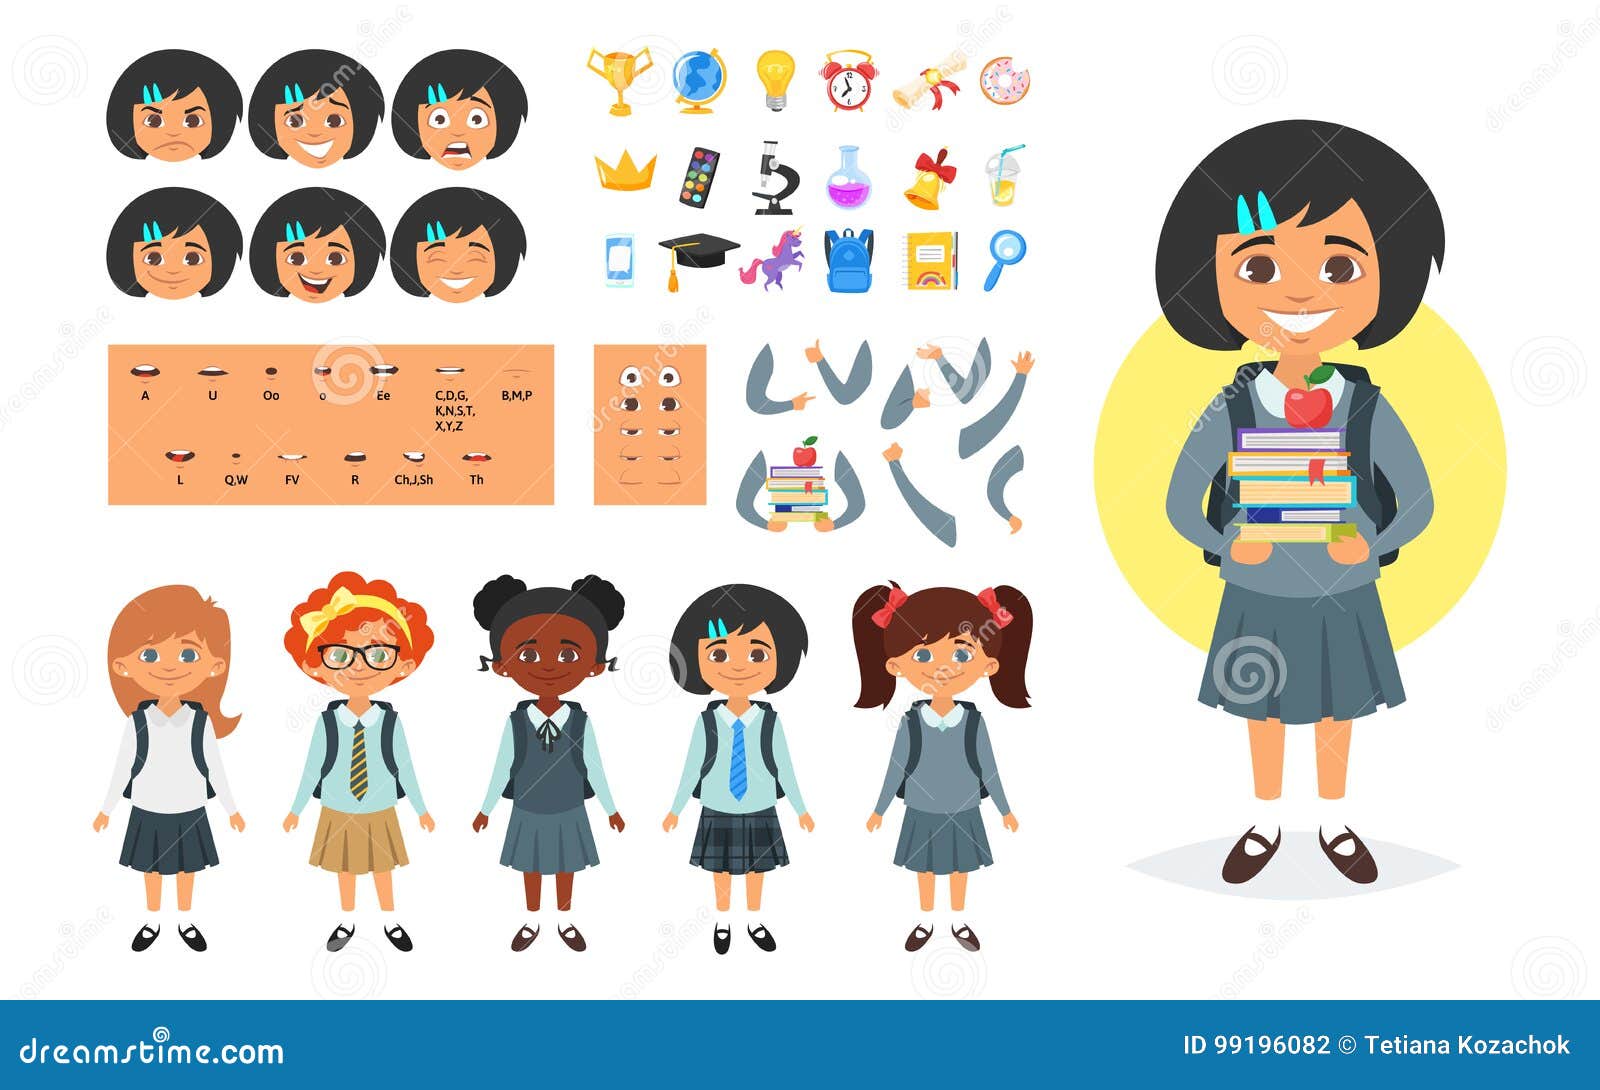 Schoolgirl Avatar Character Generator: Tưởng tượng trở thành một học sinh cấp 3 chân chính với trình tạo biểu tượng Avatar những nhân vật trẻ. Tùy chỉnh ngoại hình, quần áo và các phụ kiện để tạo ra hình ảnh của một học sinh cấp 3 lý tưởng. Thể hiện sự quyến rũ và cá tính của mình thông qua các ảnh đại diện của mình.